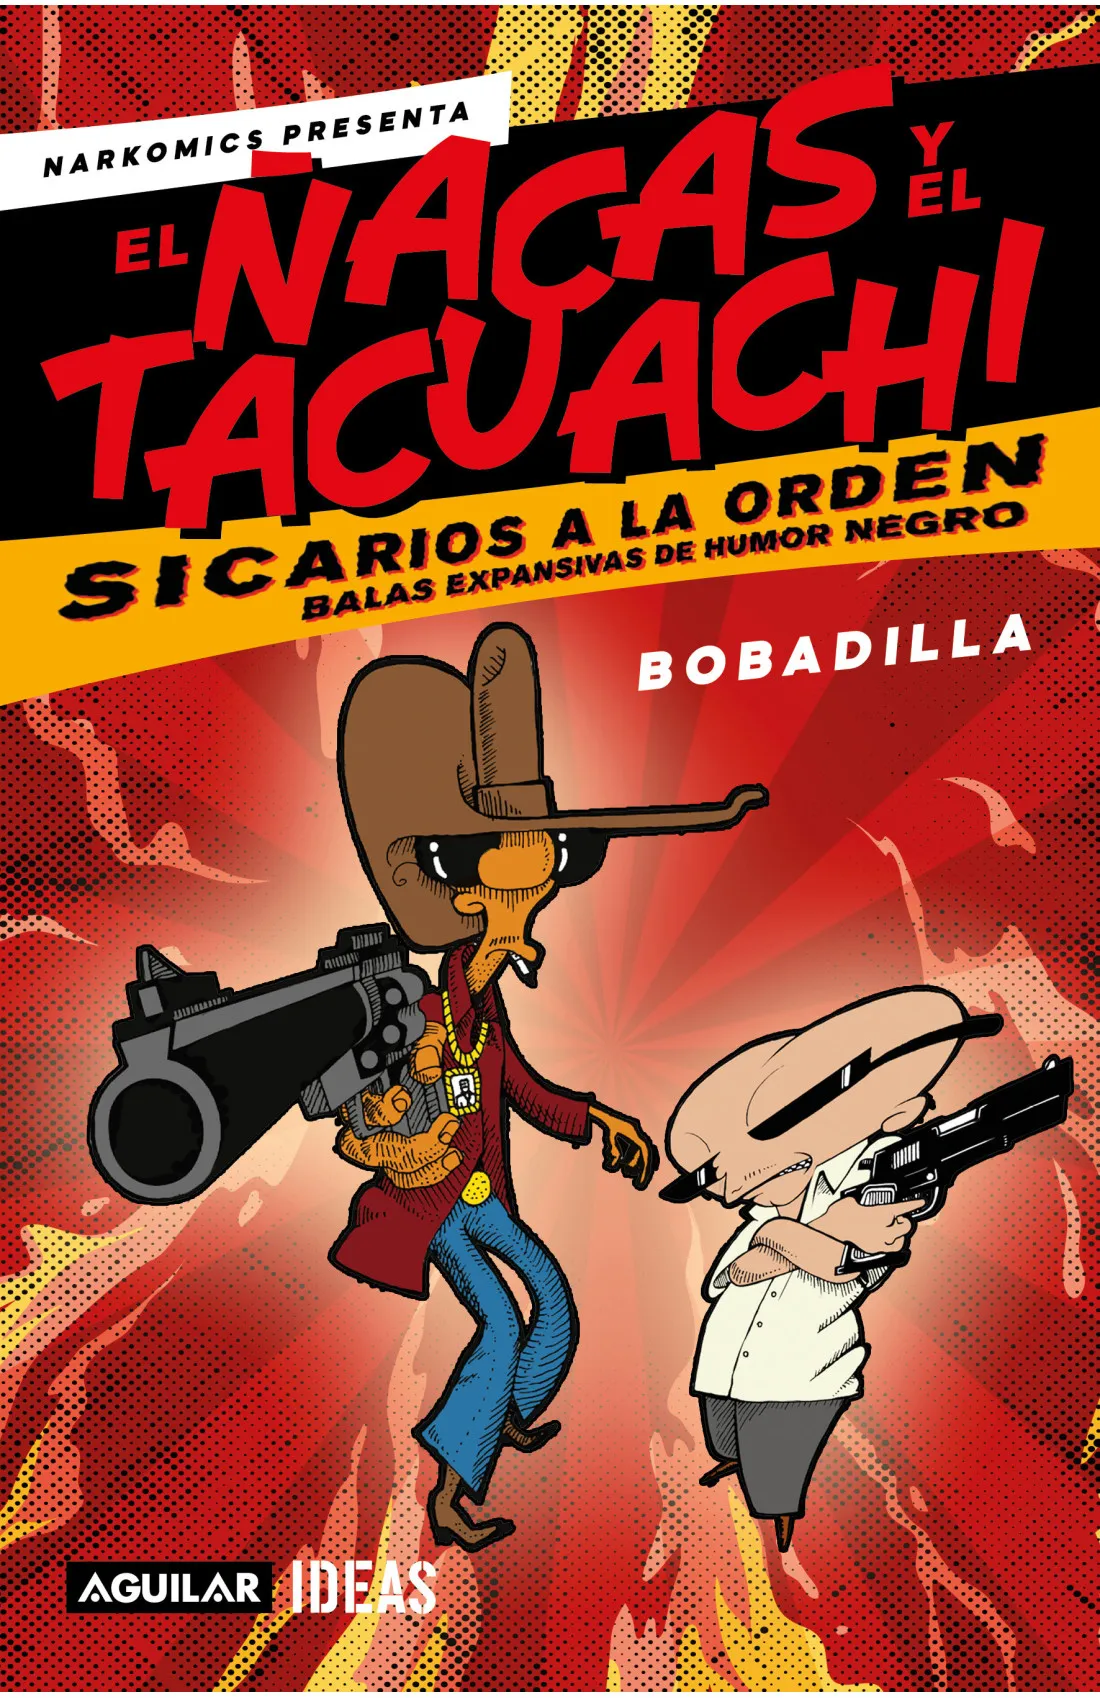 Cover of the book "Narkomics presenta: El Ñacas y El Tacuachi. Sicarios a la orden”, by Mexican cartoonist Bobadilla.